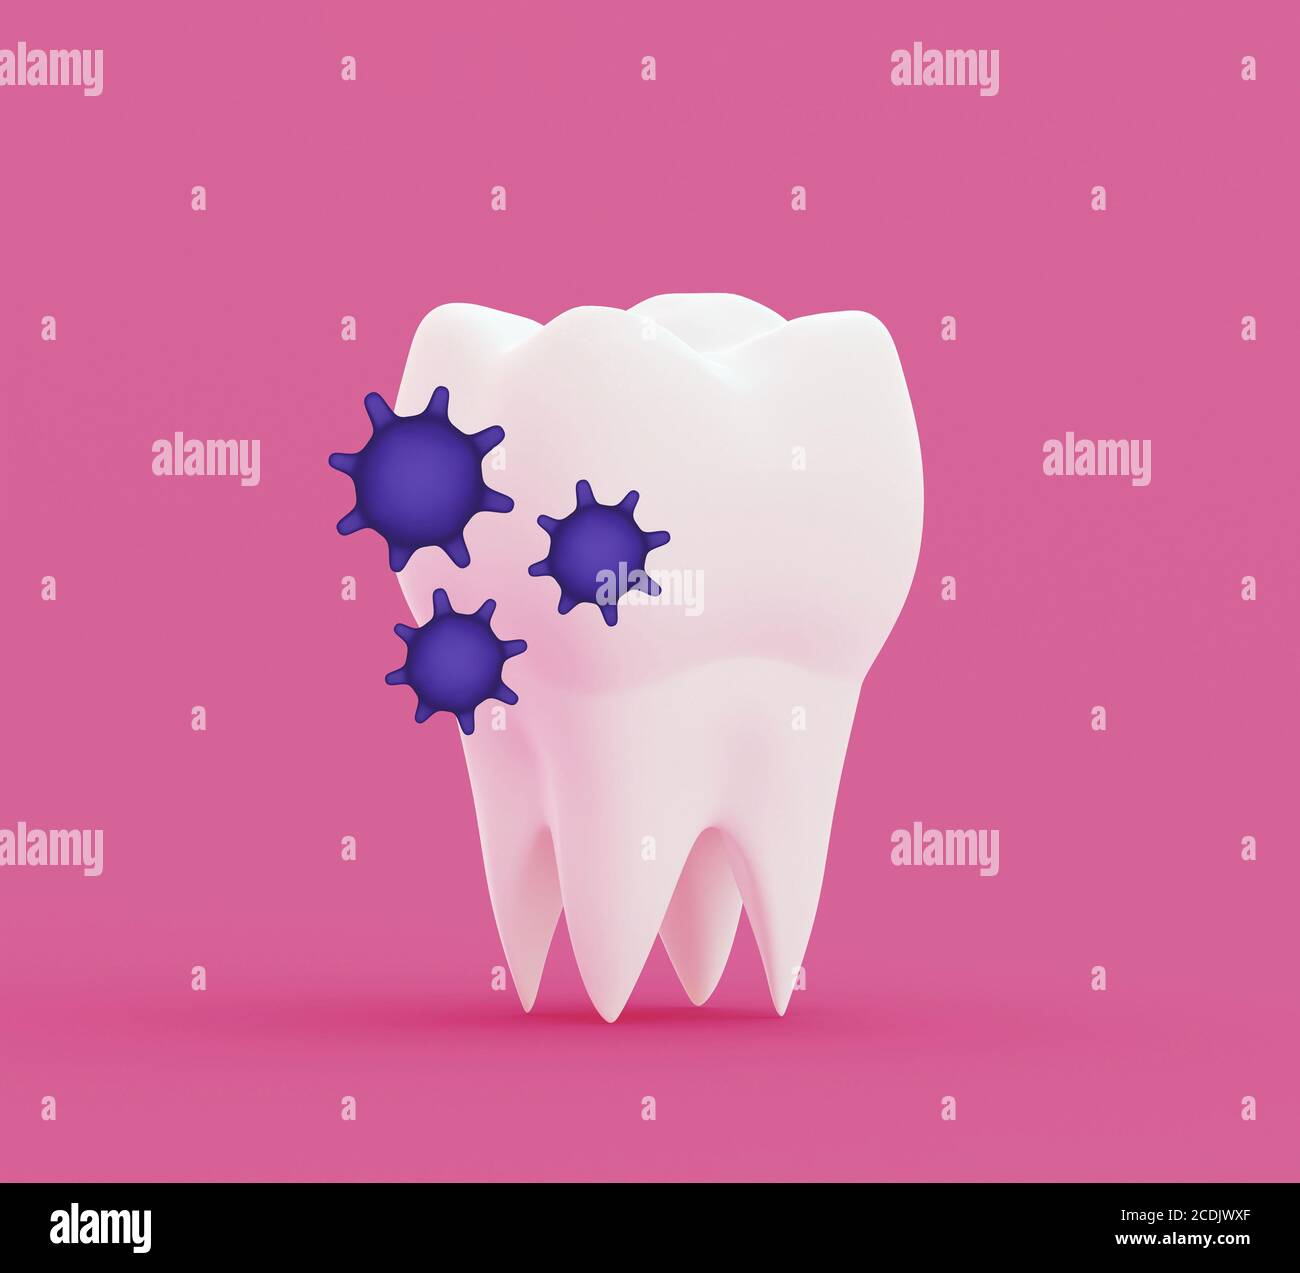 molaire à dents blanches avec germes sur fond rose, bactéries caries, illustration 3d Banque D'Images